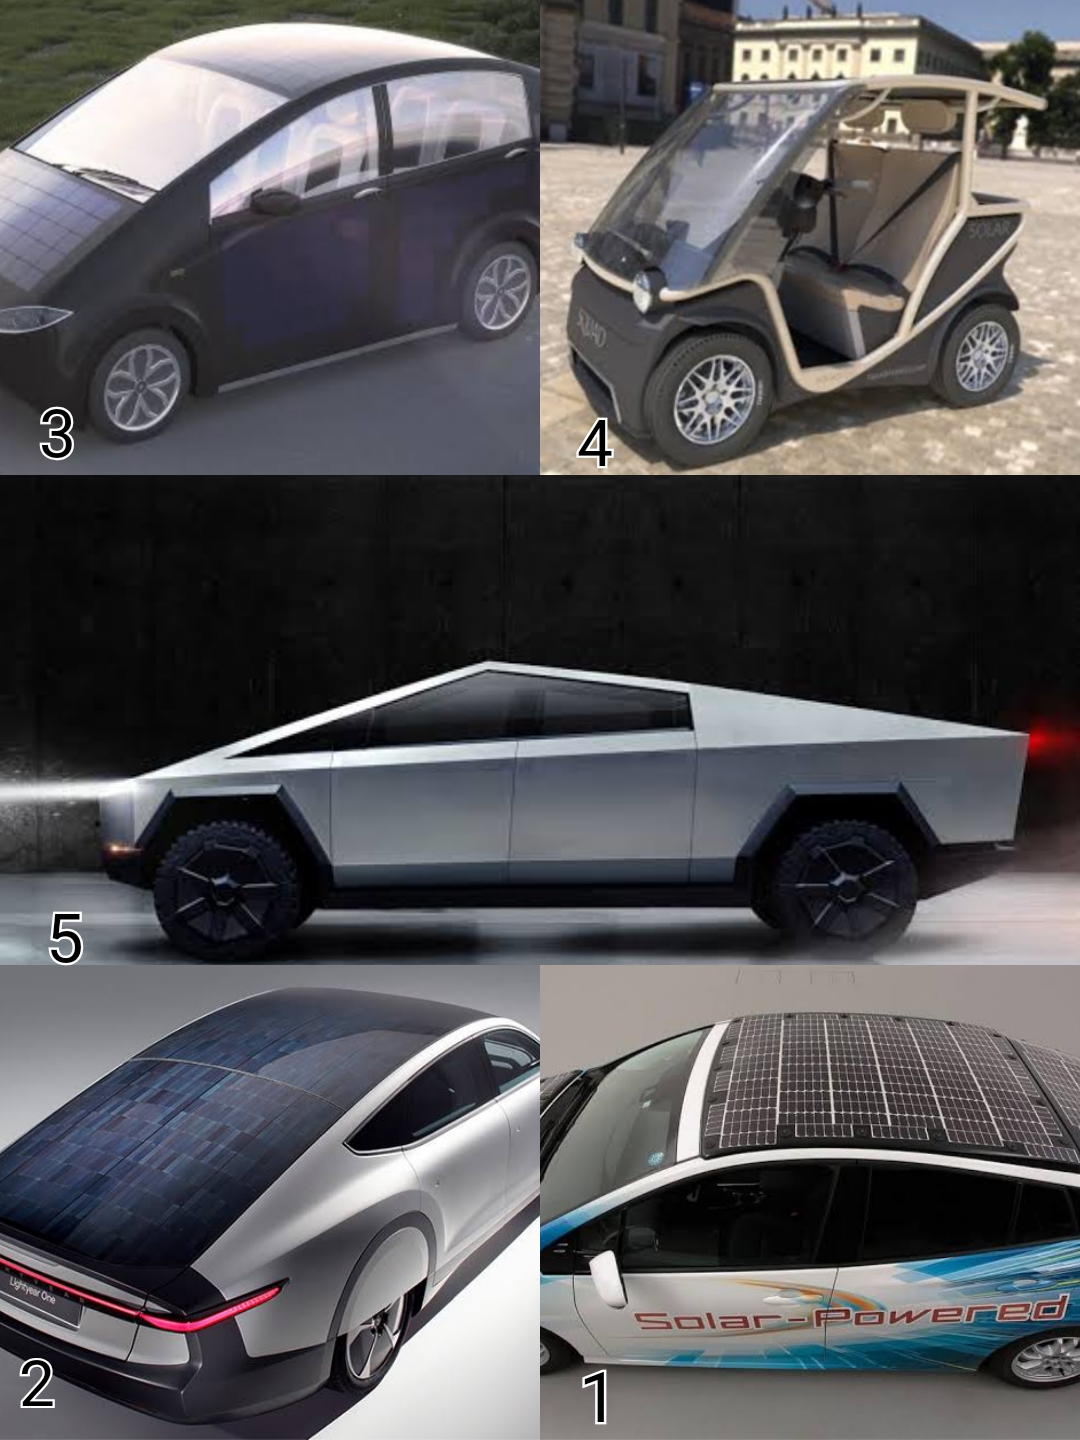 5 Newly Innovation Solar Cars